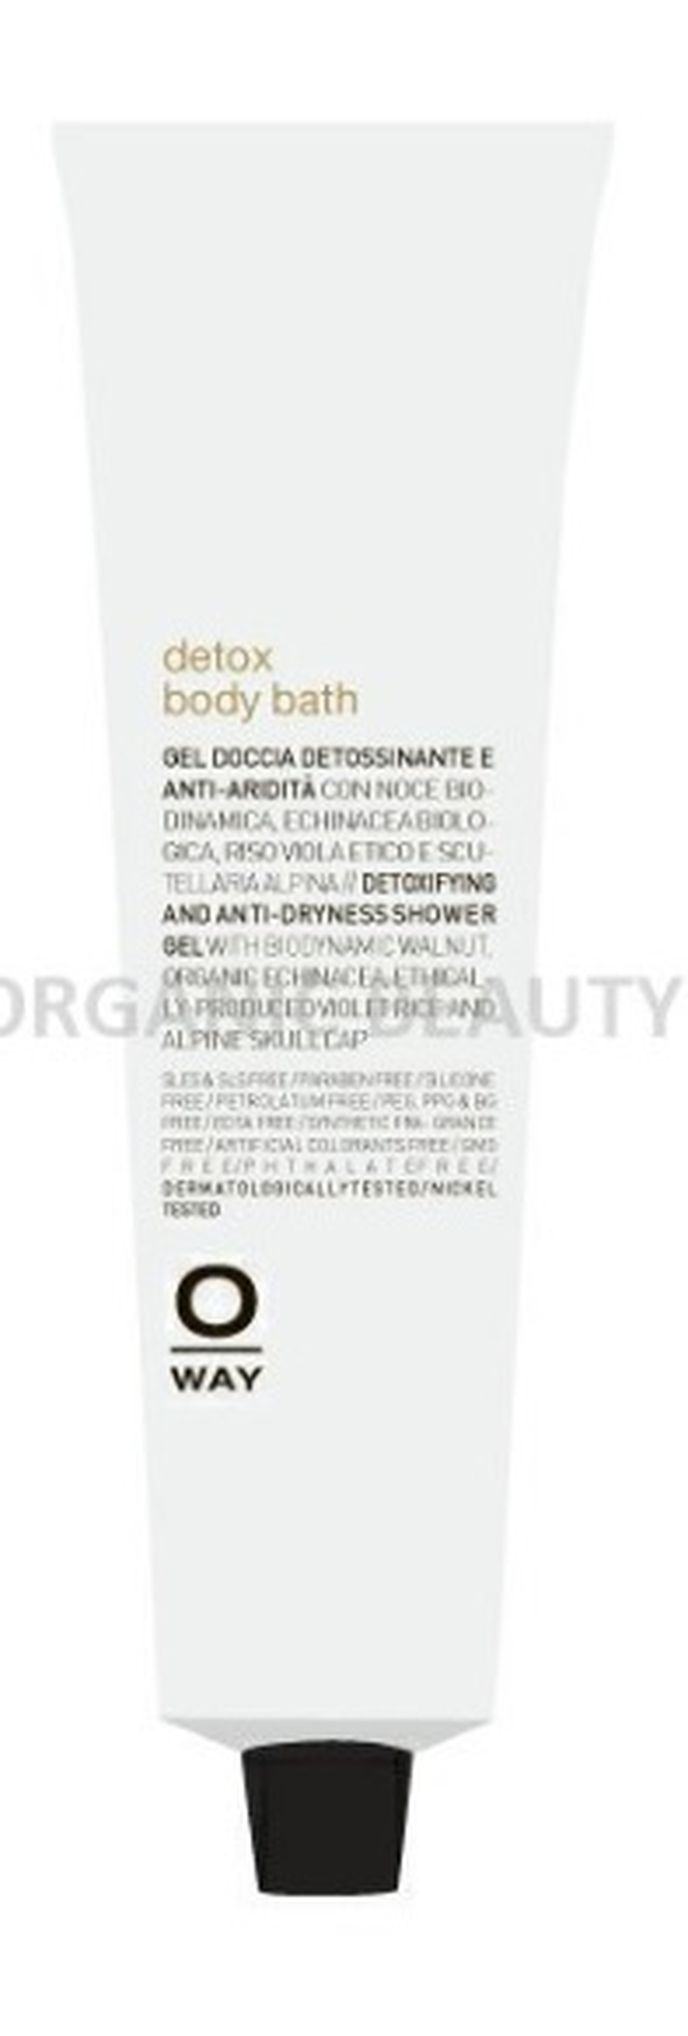 Detoxikační a vyživující sprchový gel Beauty Detox Body Bath, Oway, ecoorganicbeauty.cz, 310 Kč/50 ml